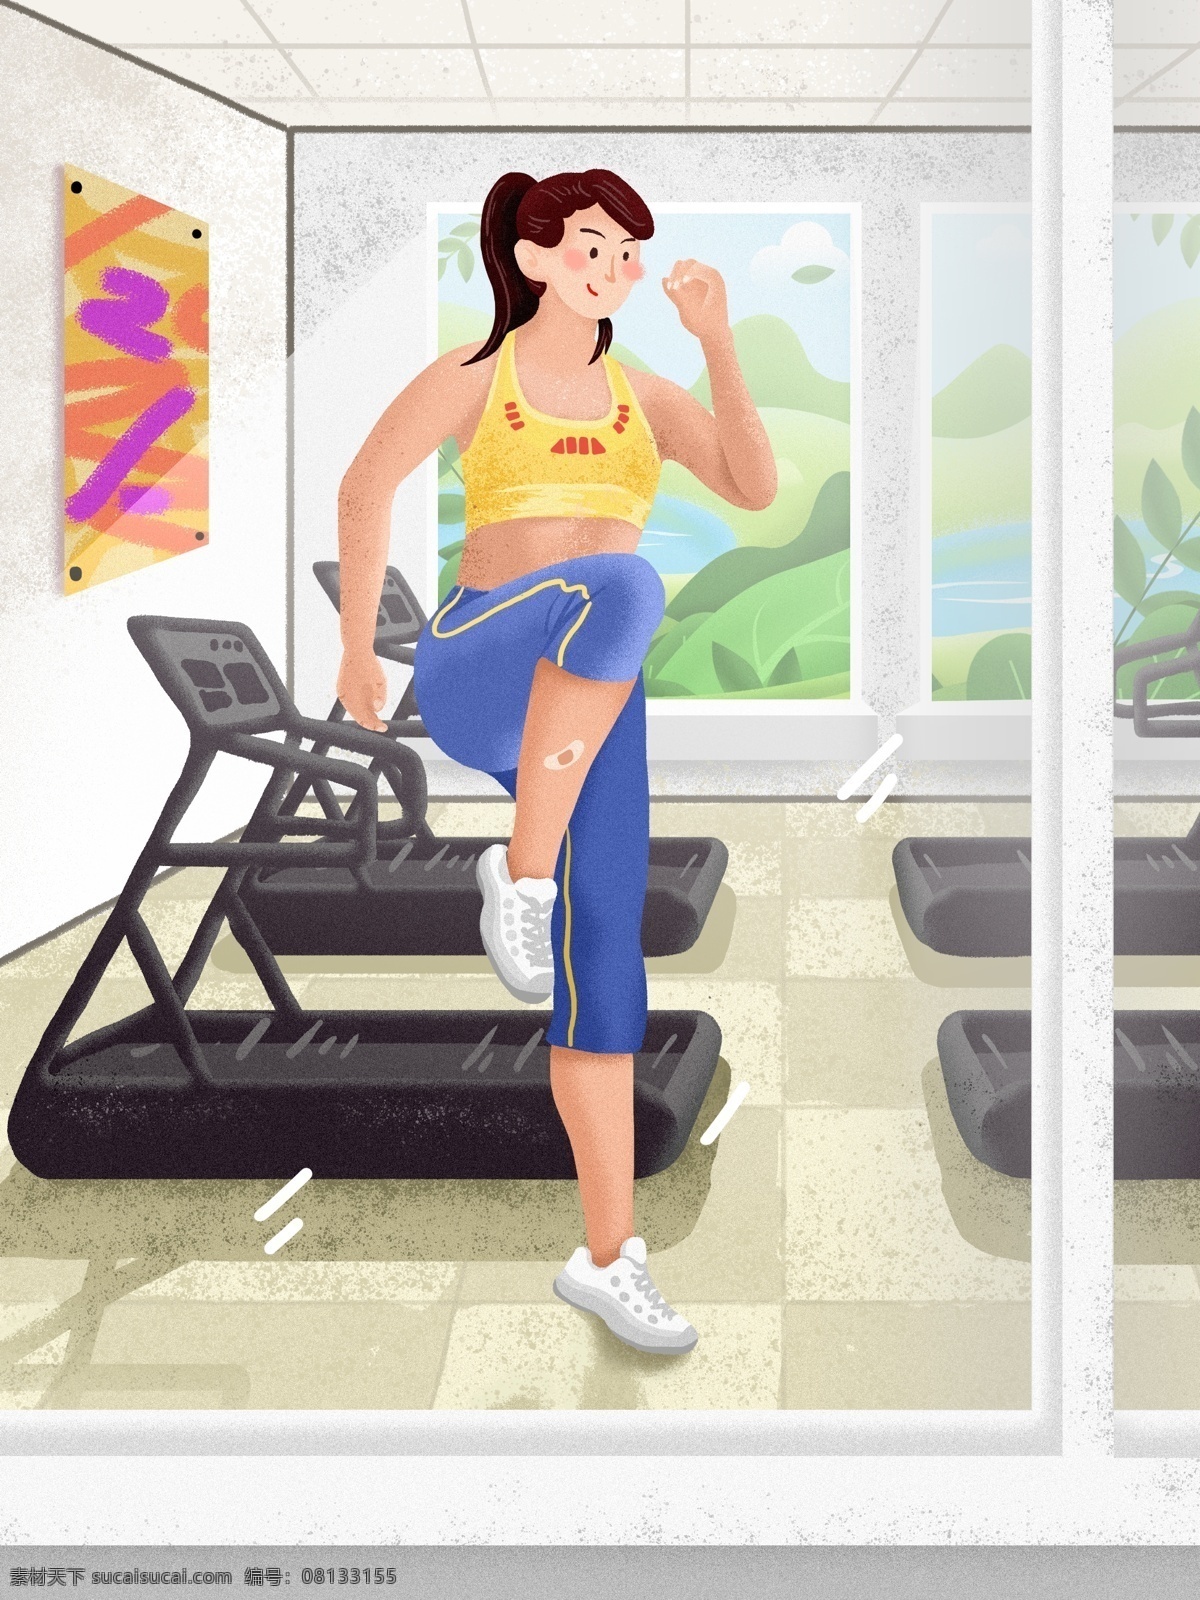 燃烧 卡路里 健身室 内 运动 治愈 系 手绘 质感 插画 脂肪 健身 健身房 塑形 健康 阳光 室内 有氧运动 积极 燥点 写实 女生 窗户 清新 生活